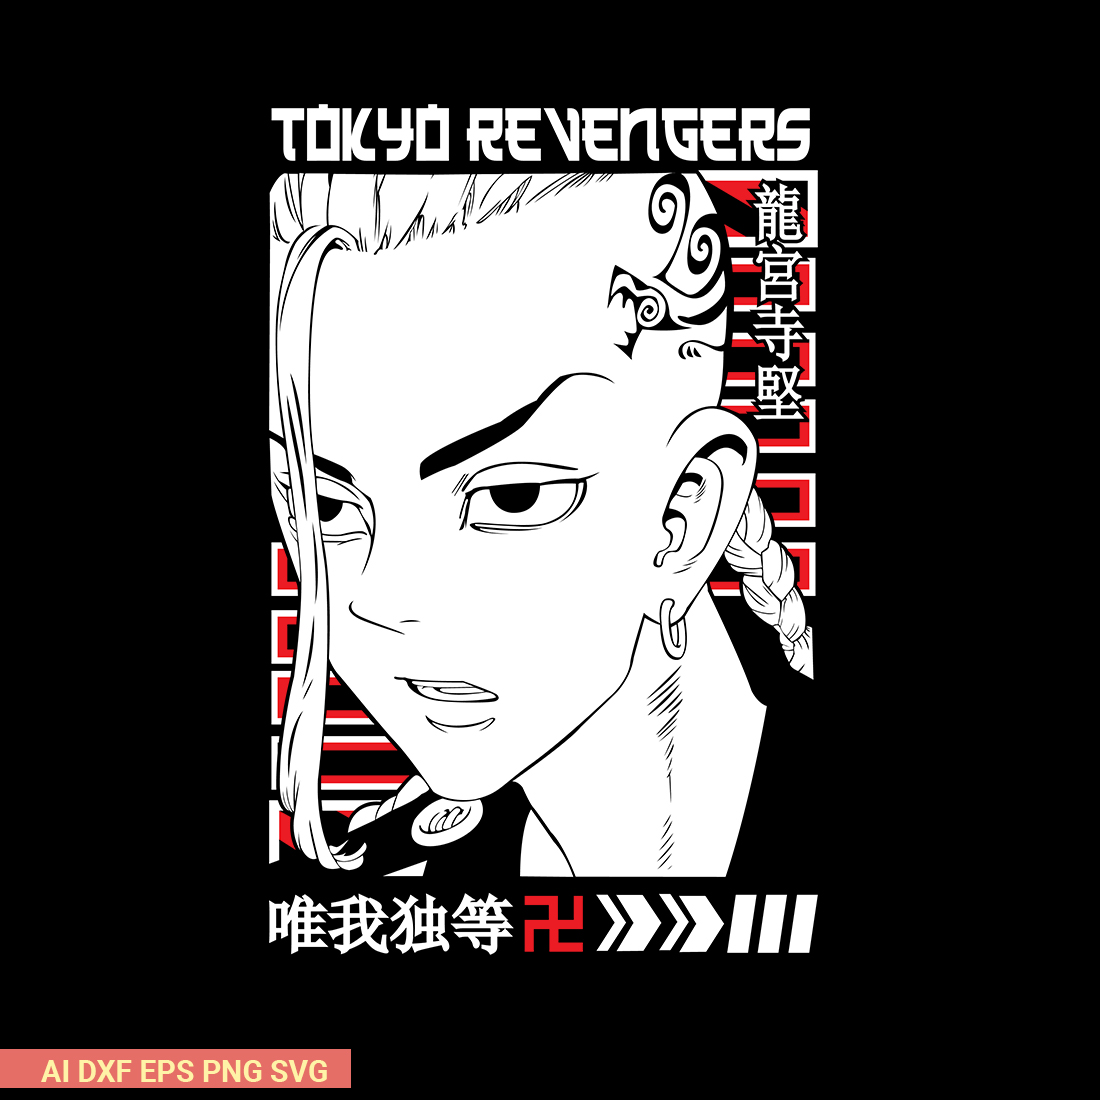 Draken Manga Tokyo Revengers SVG preview image.